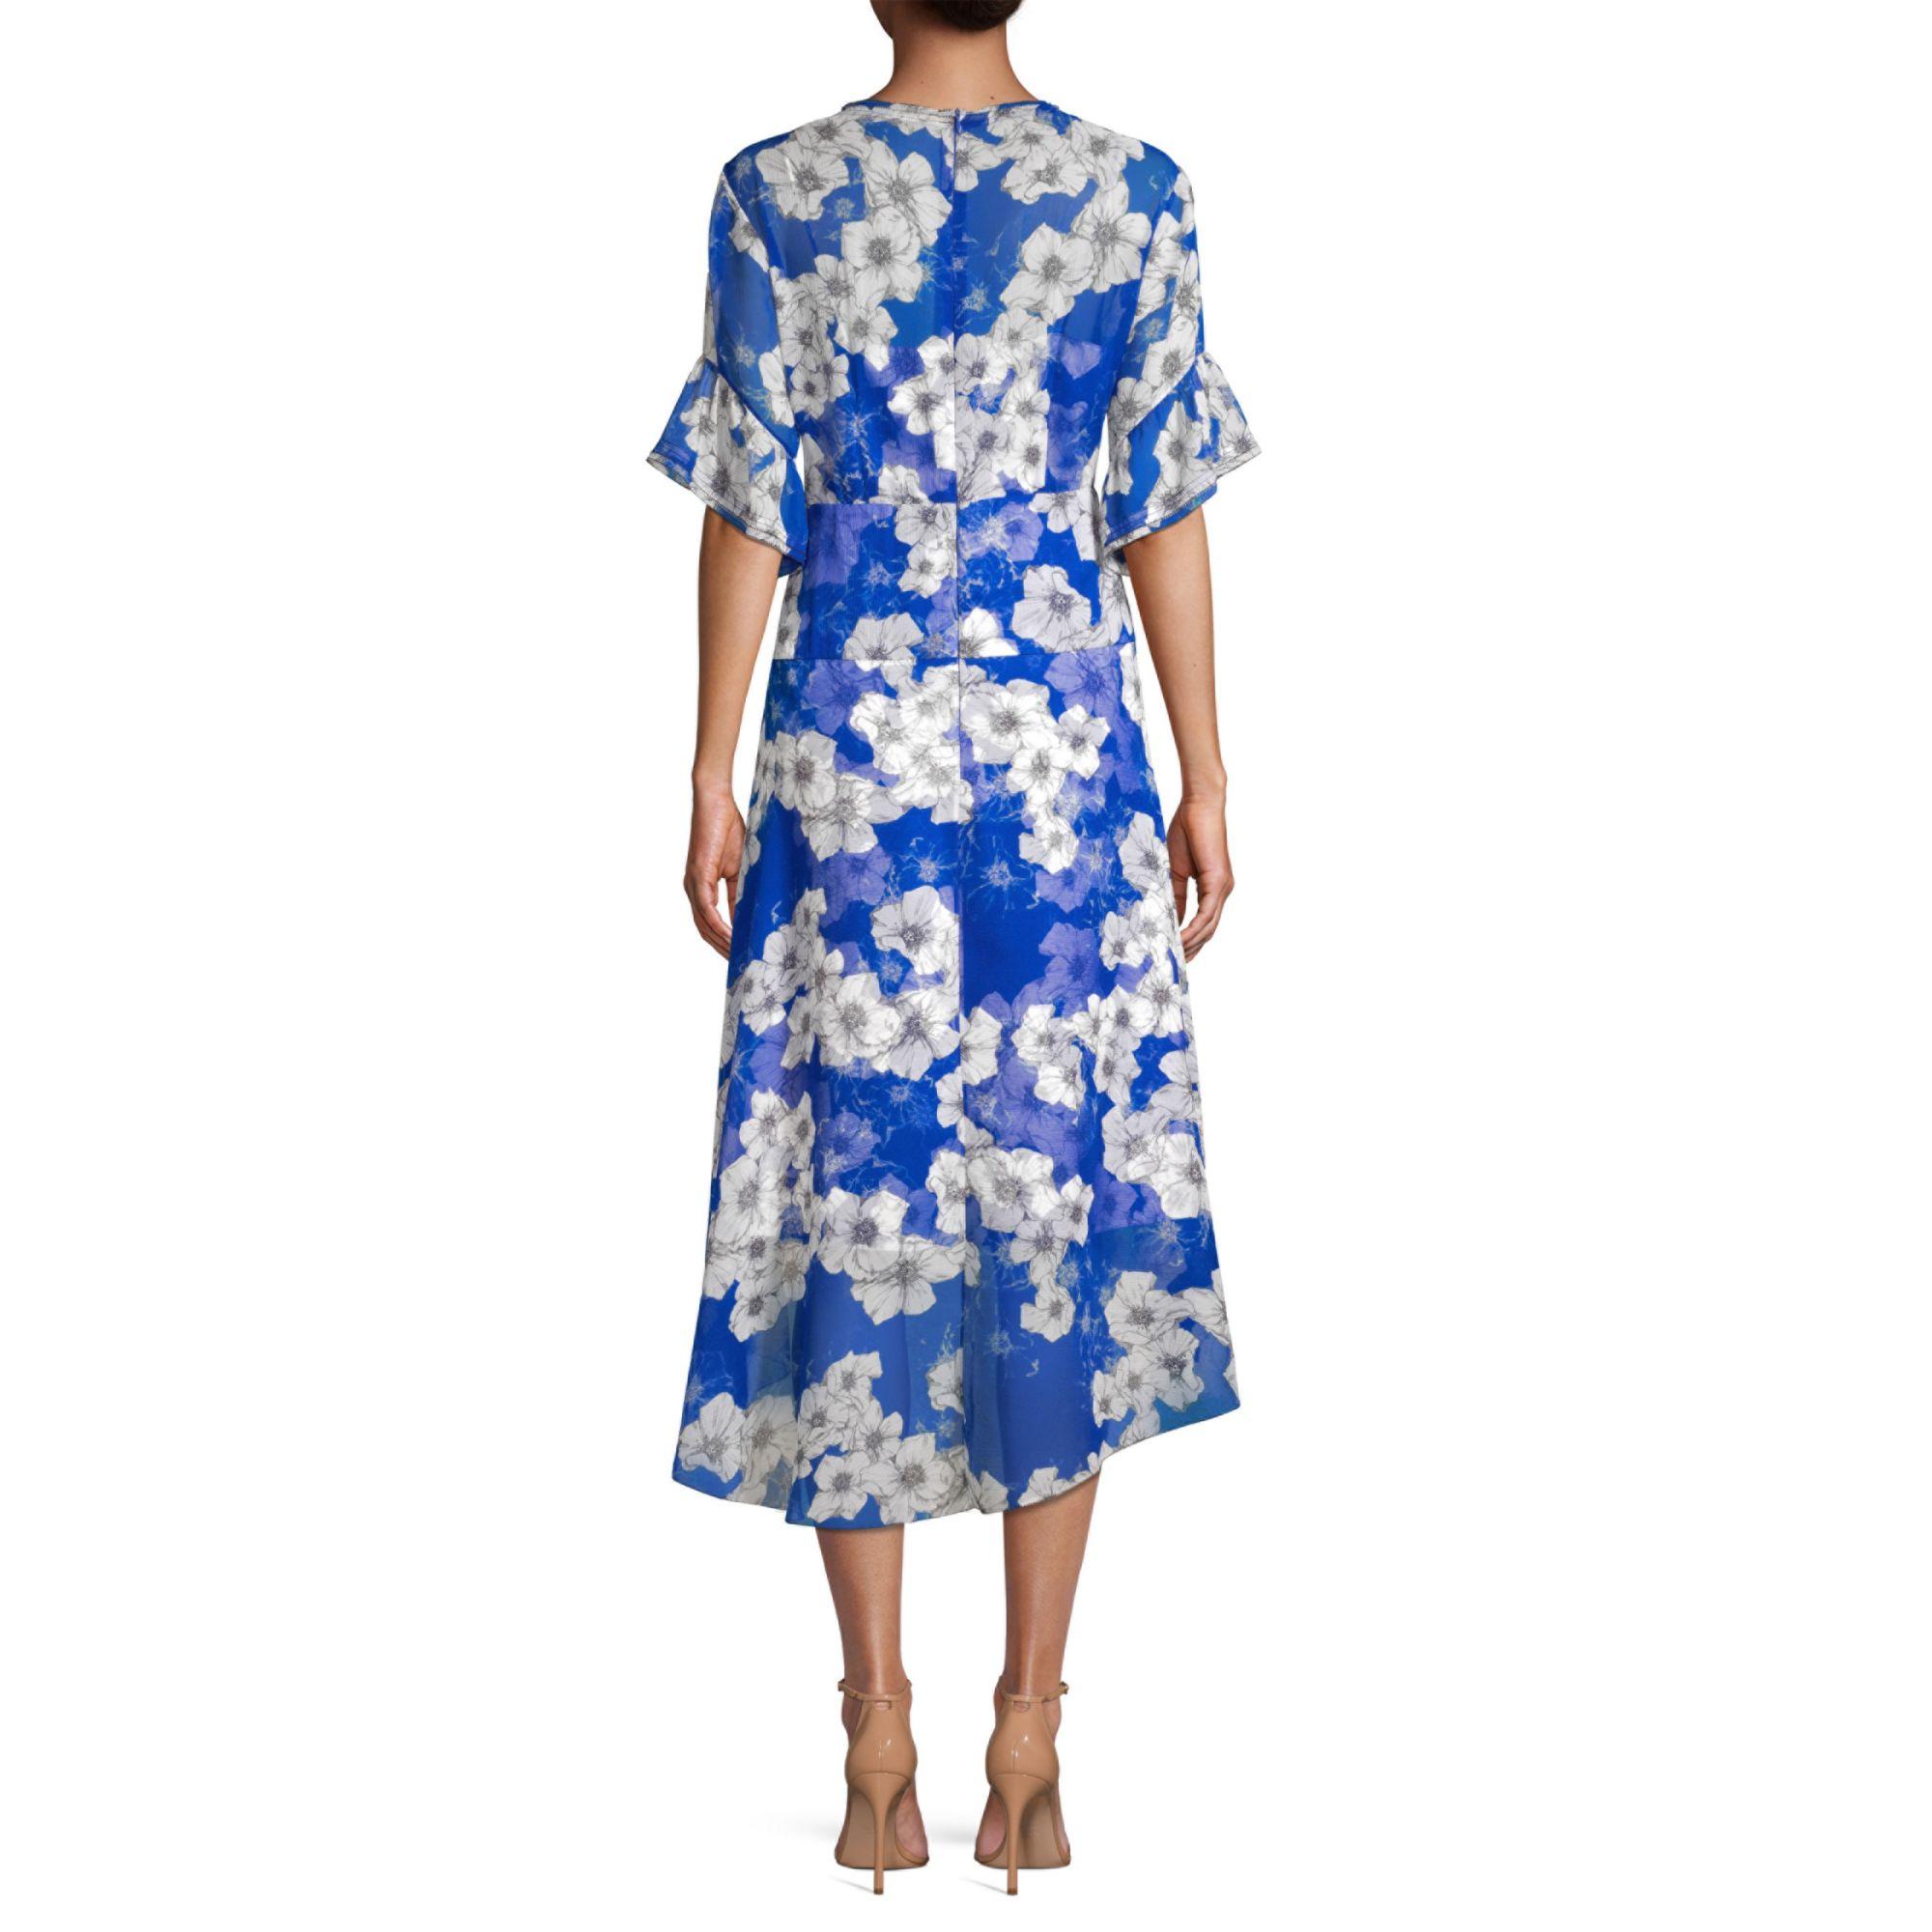 Elie Tahari Ava Floral Chiffon Dress in Ultra Marine (Blue) - Lyst